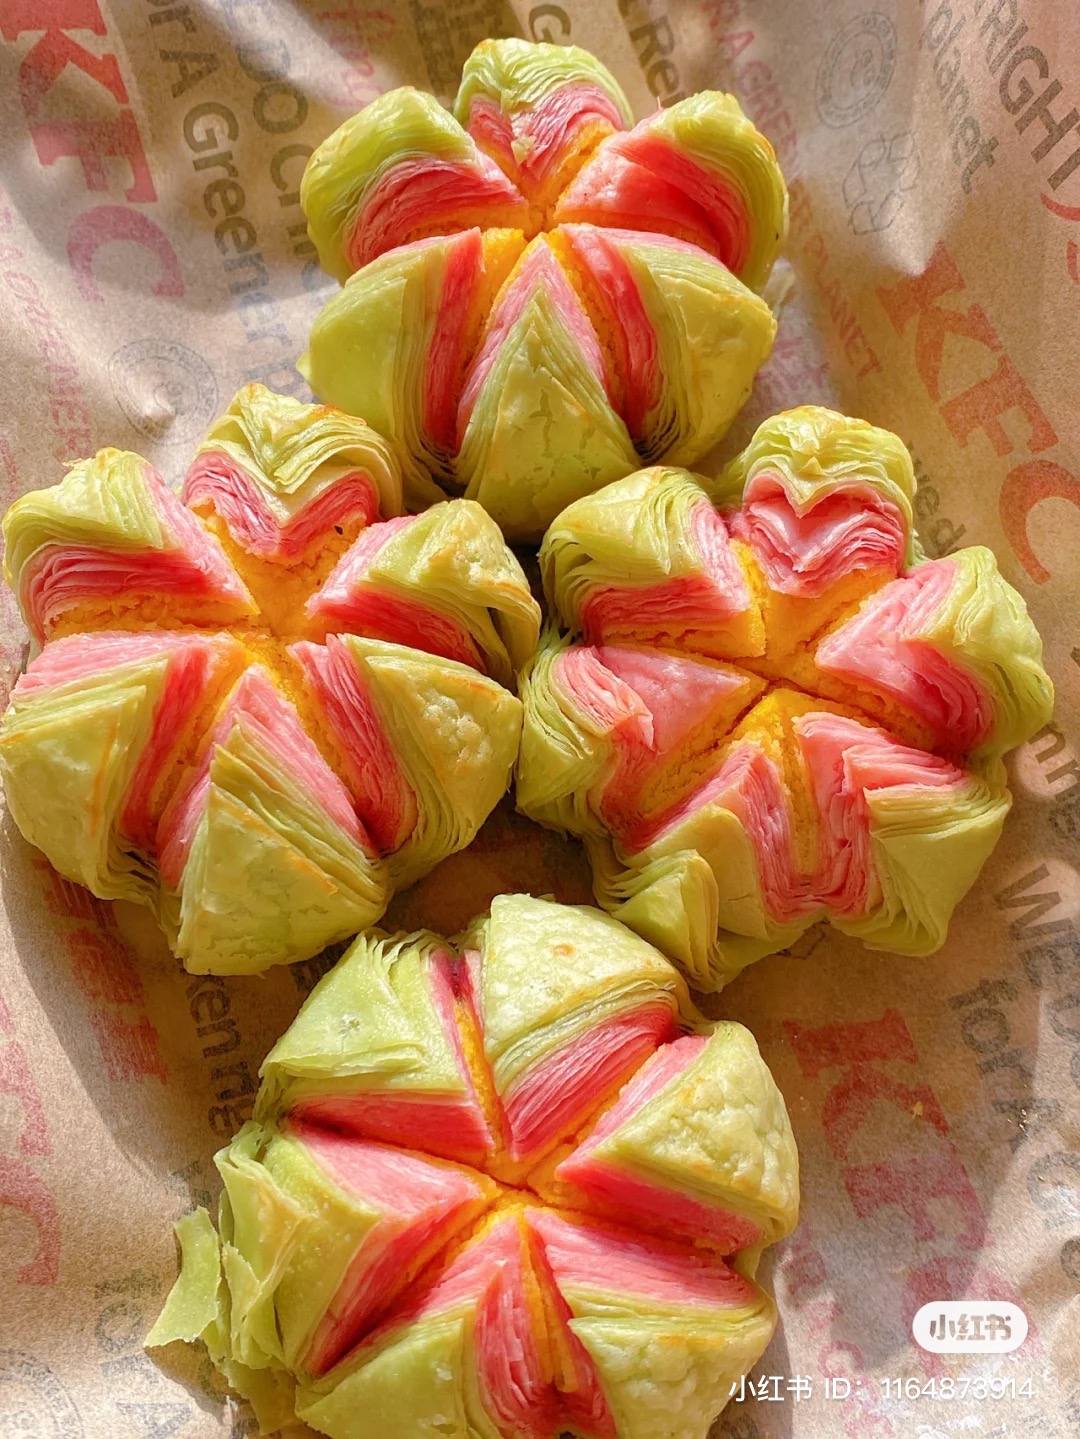 Hà hoa tô, món bánh hoa sen ngàn lớp có gì đặc biệt mà KFC Trung Quốc tung ra mừng lễ Trung thu năm nay - Ảnh 1